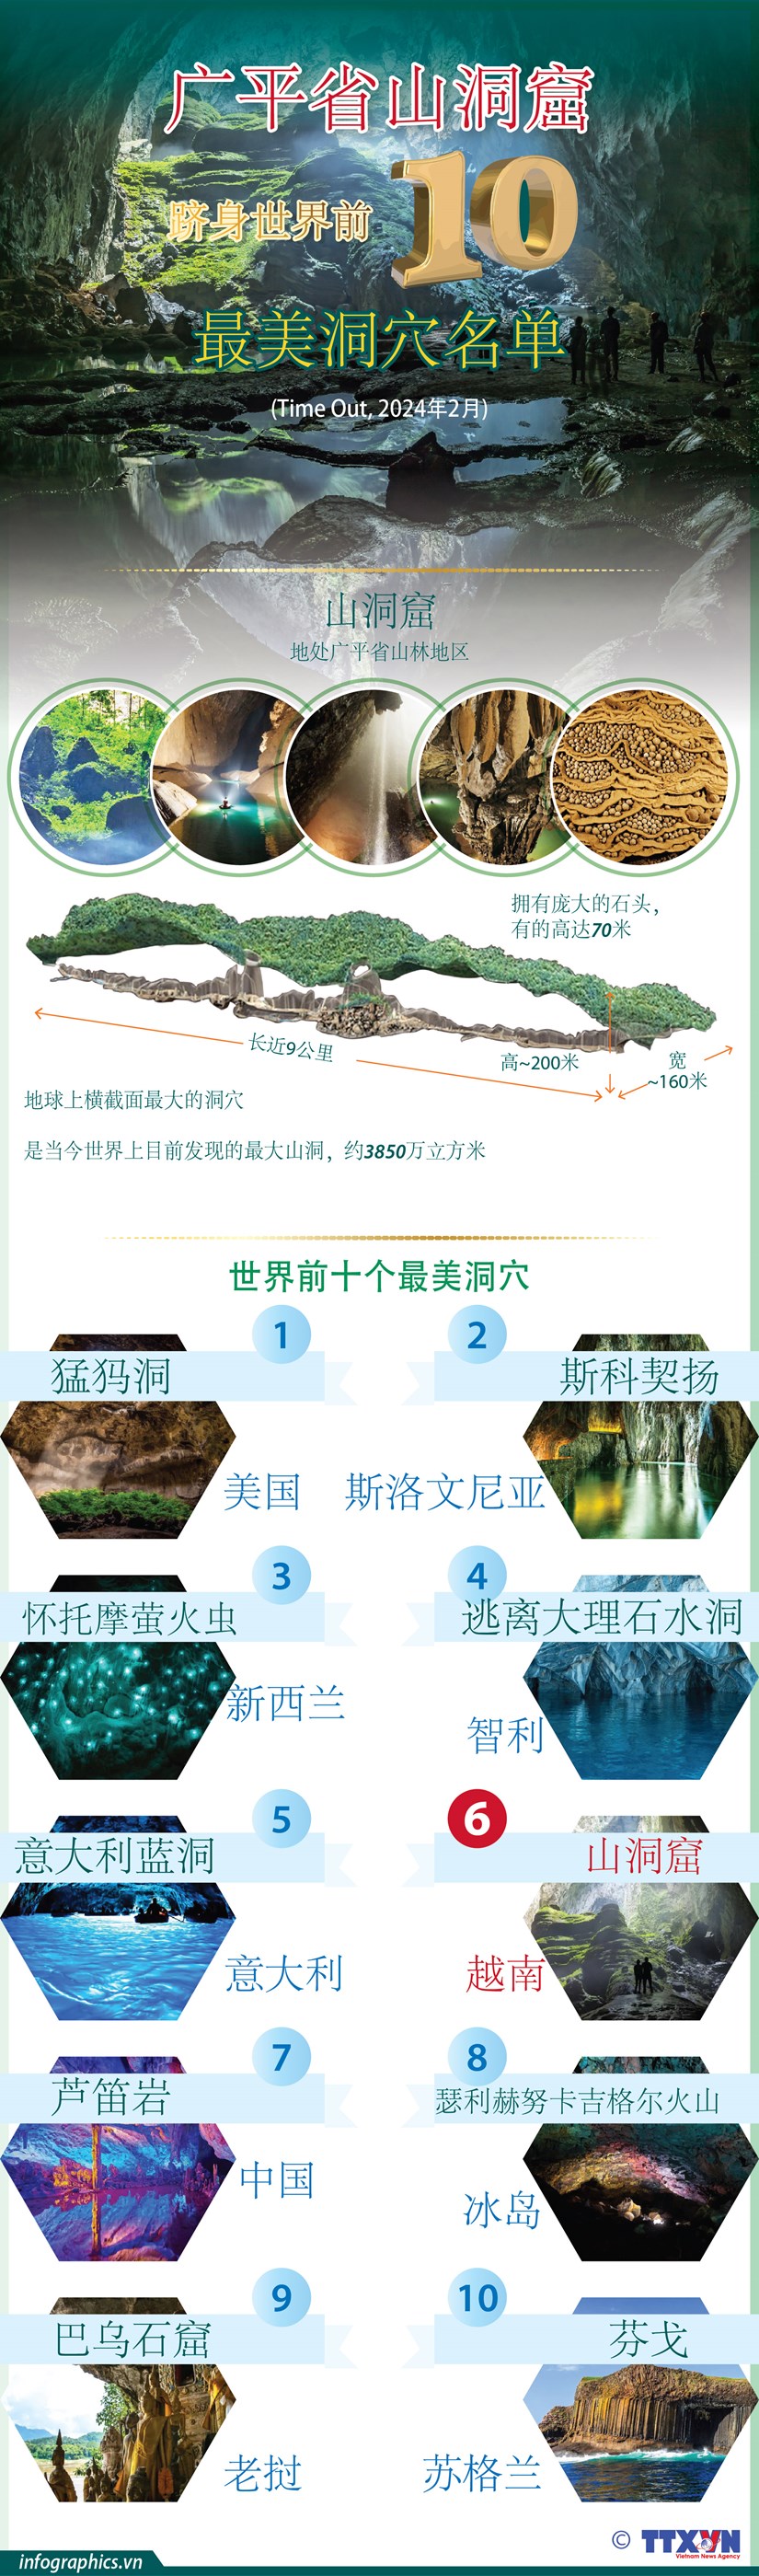 图表新闻：越南广平省山洞窟跻身世界前十最美洞穴名单 hinh anh 1